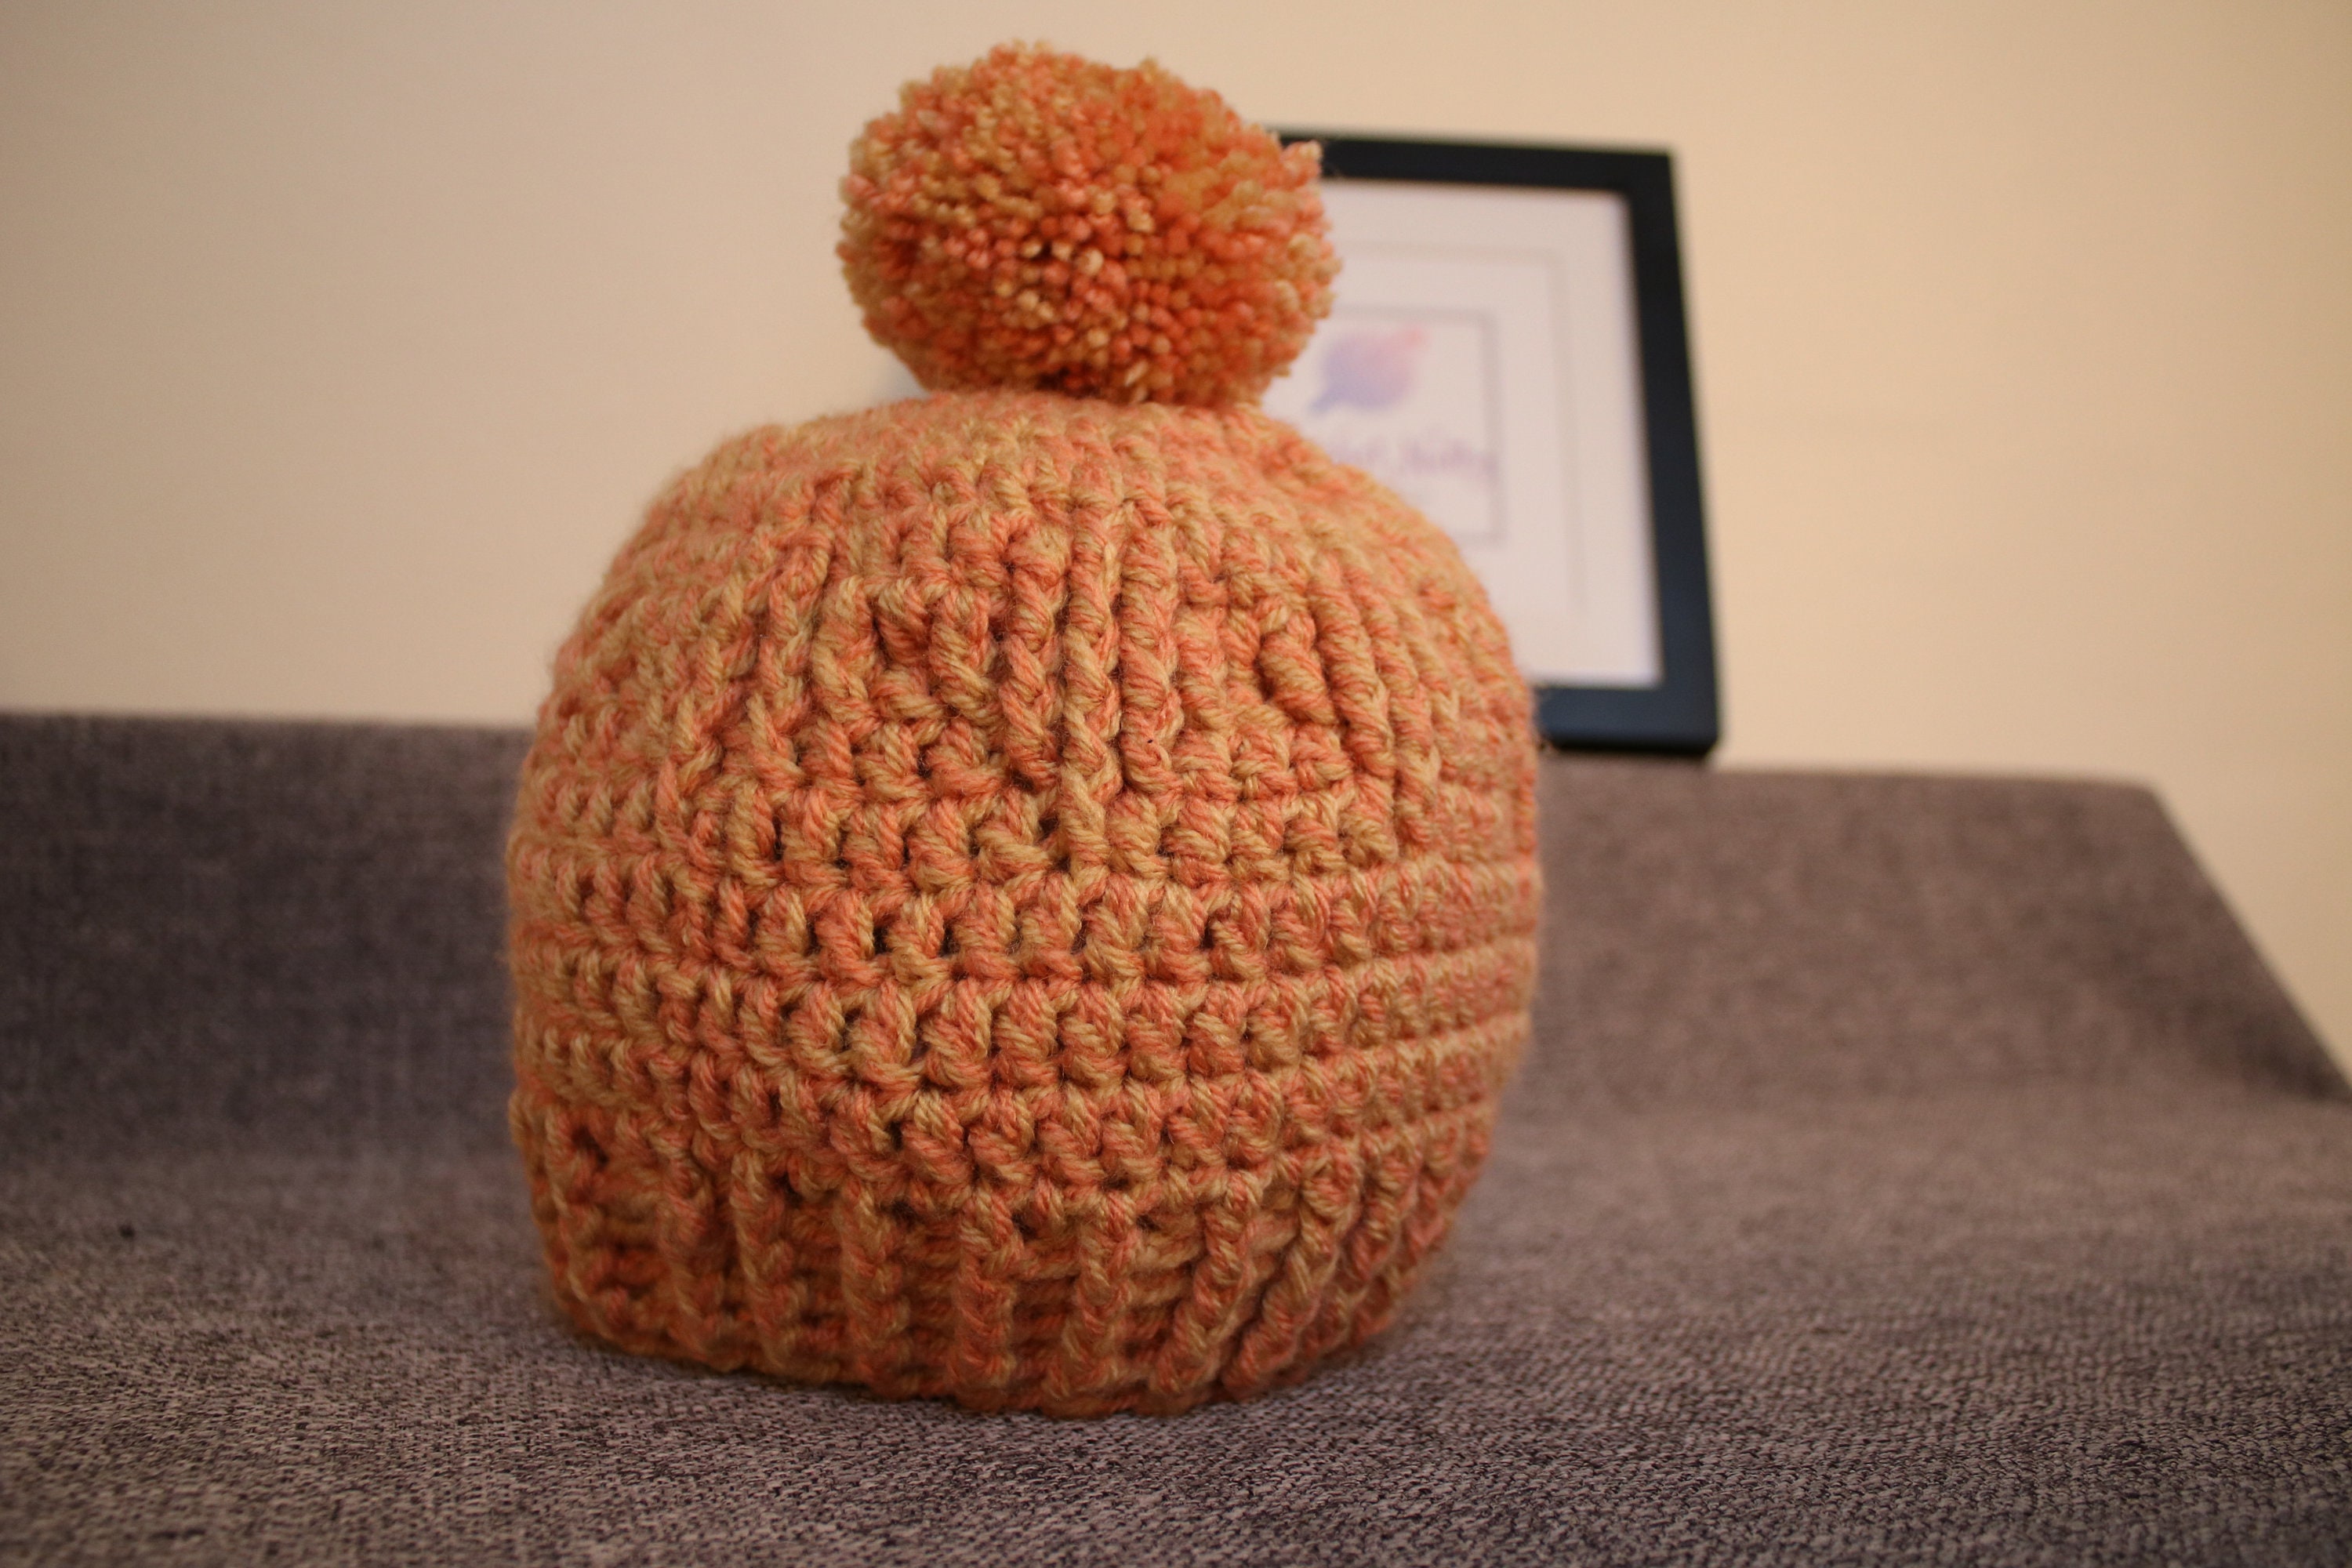 Crochet Kit, Beginners Crochet Kit, Crochet Hat Kit With Yarn, Beginner  Crochet Kit in the UK, Gift for Crafters, Gift for Crocheters 